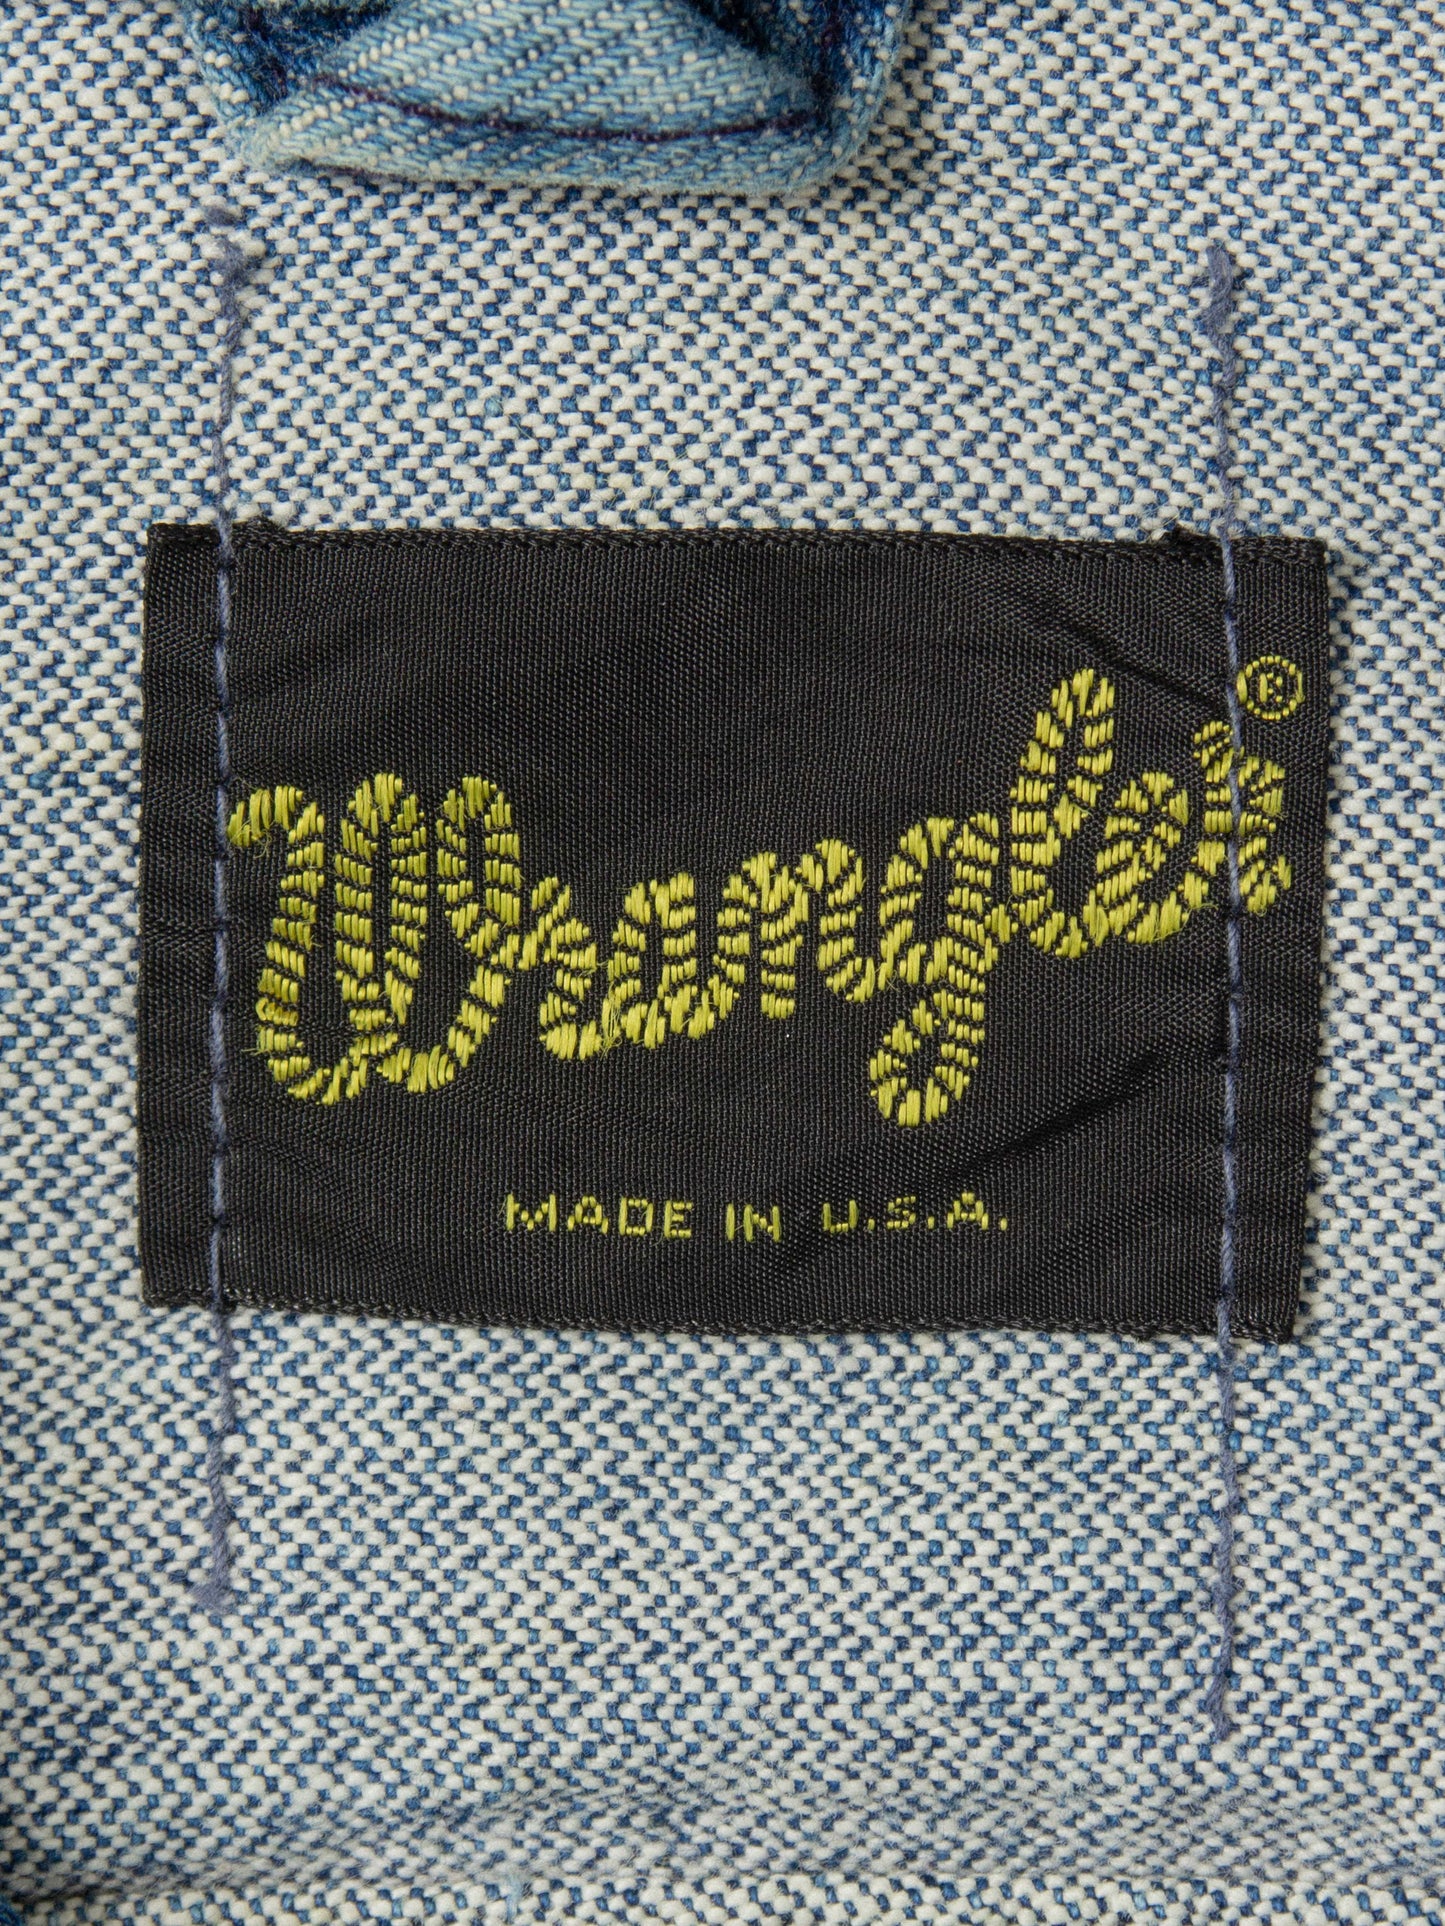 Vtg 1970s Wrangler Denim Jacket - Made in USA (M)